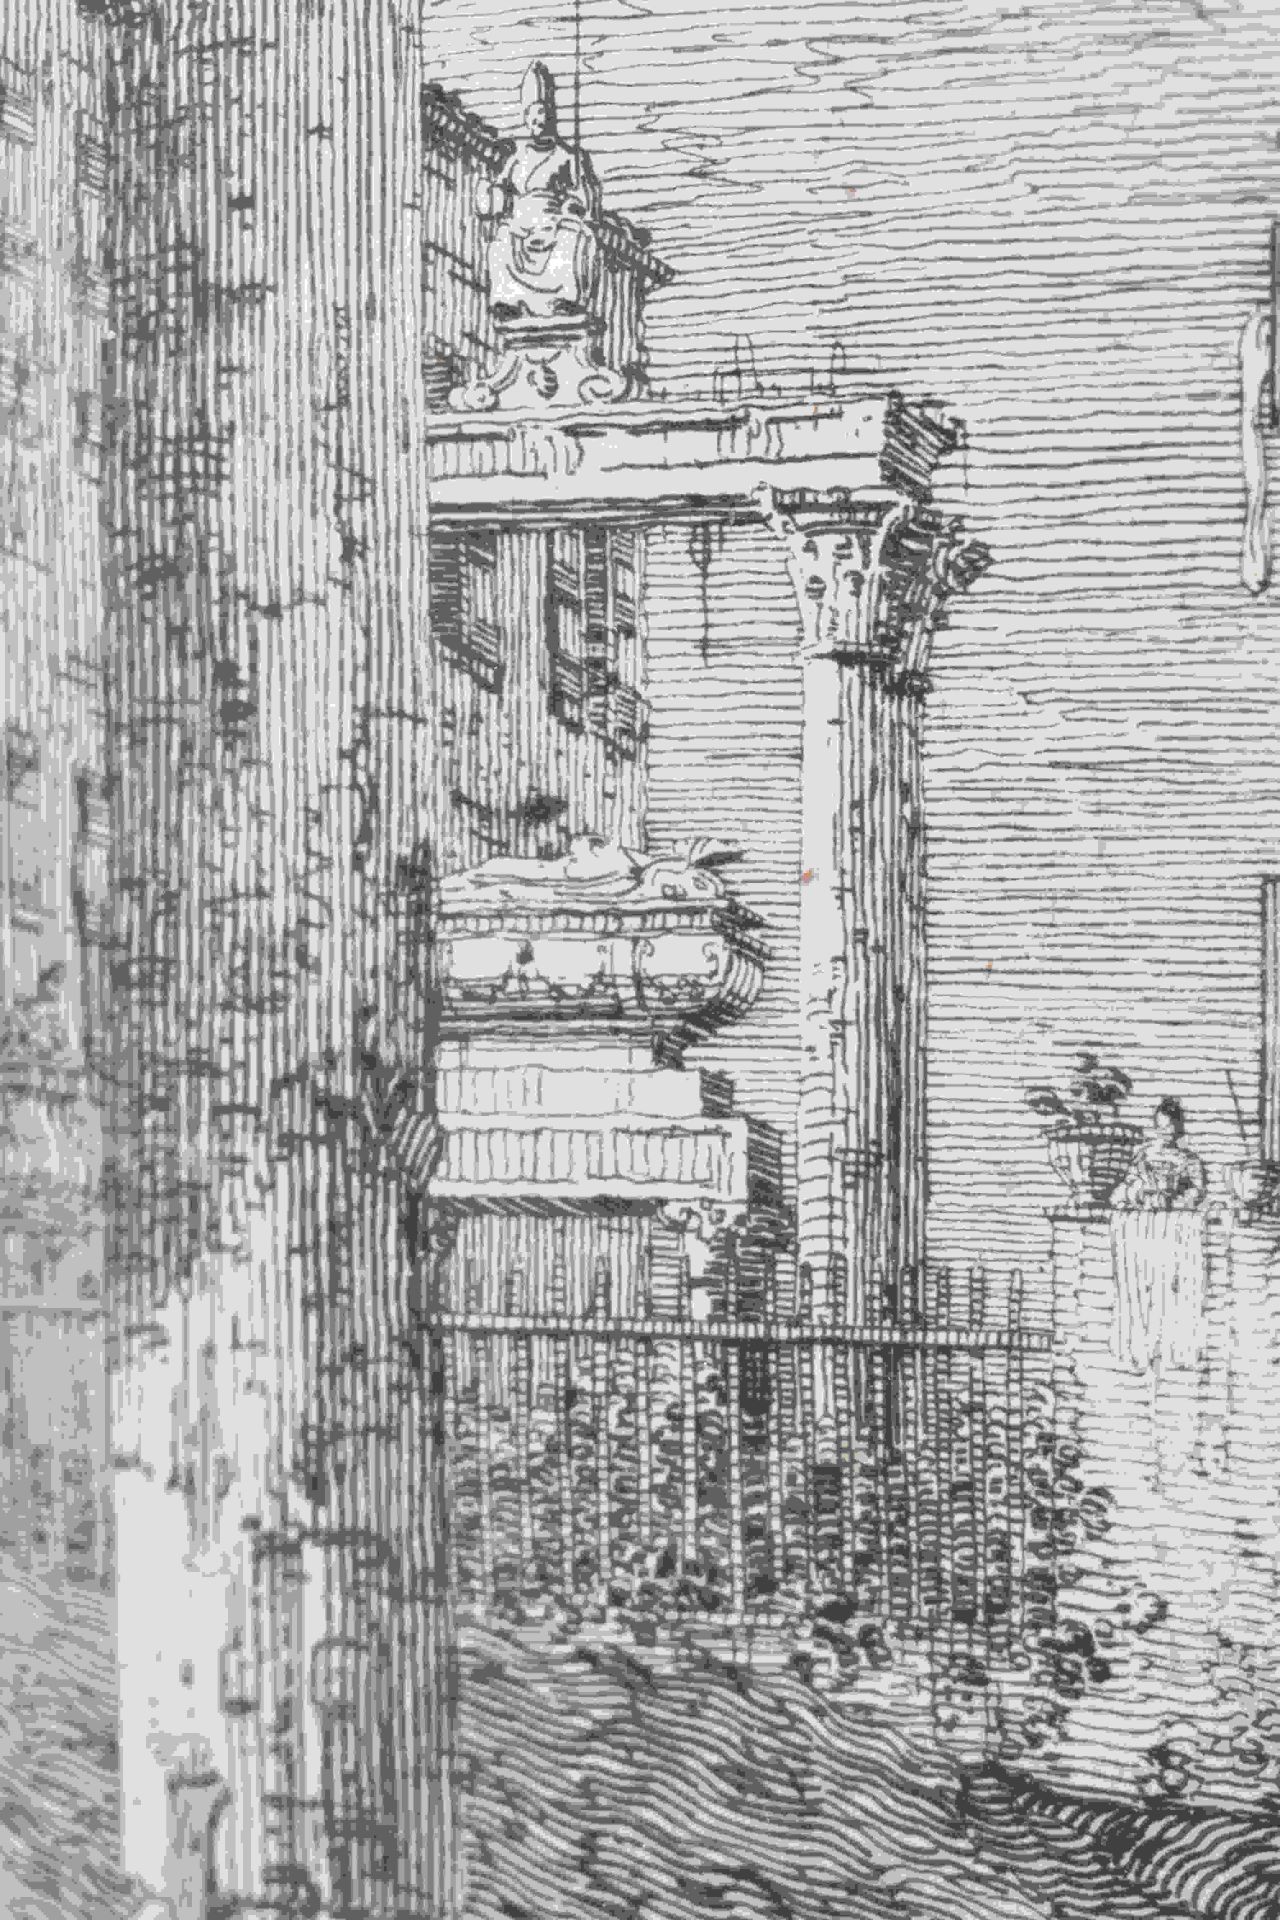 Canal, Giovanni Antonio, gen. Canaletto: Il portico con la lanterna - Image 3 of 24